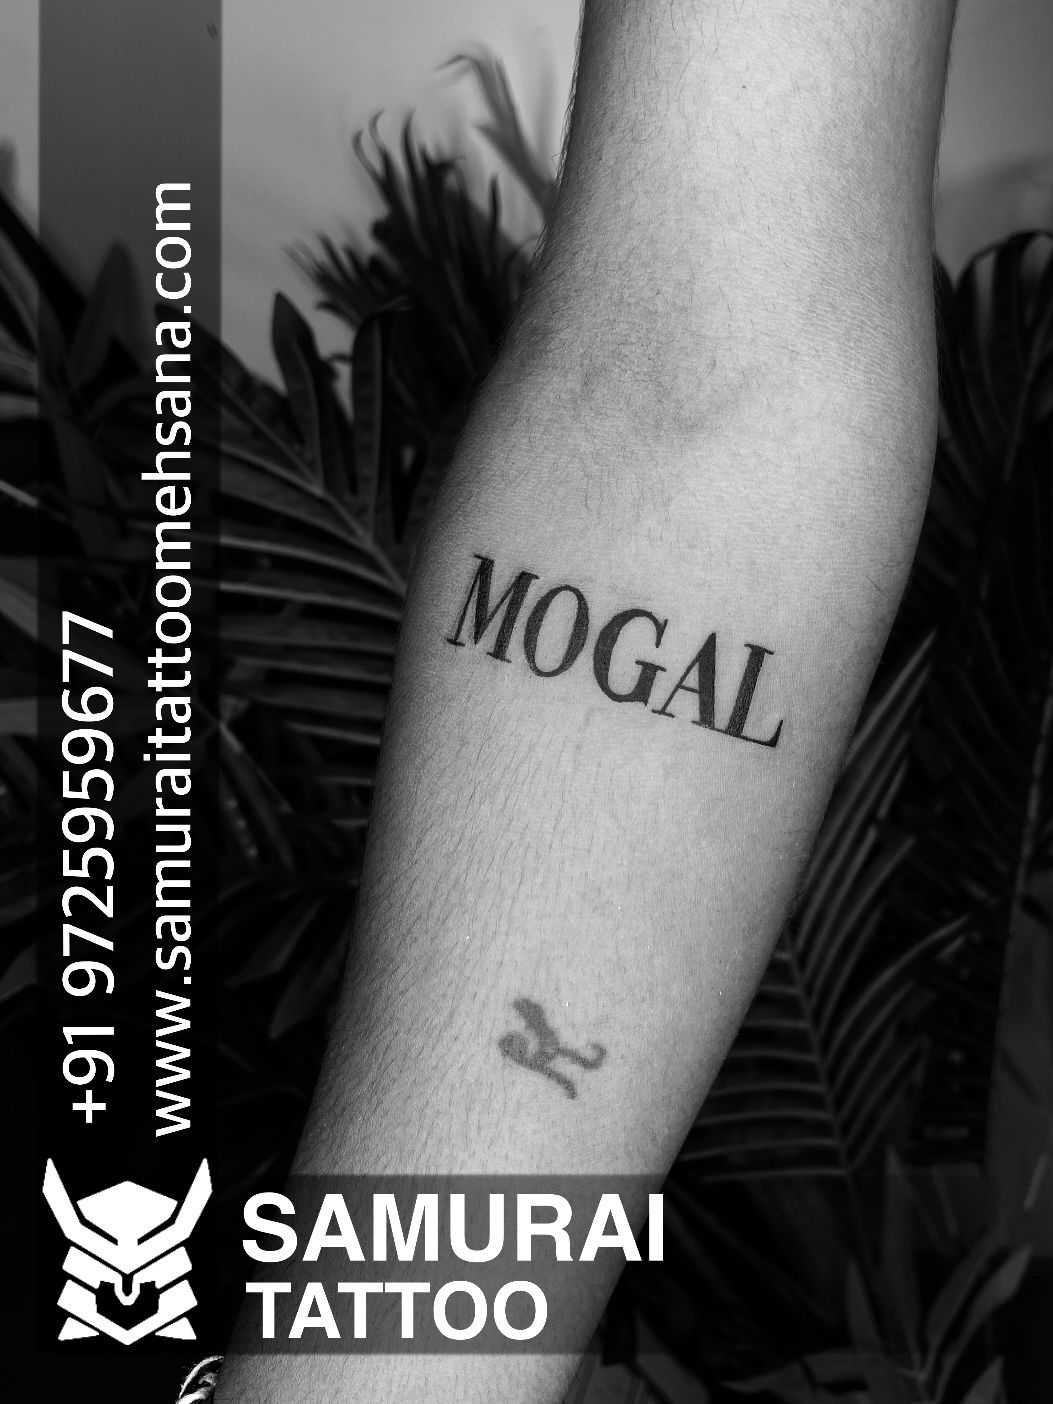 Maa mogal tattoo | Alphabet tattoo designs, Tattoos, Tattoo sketches